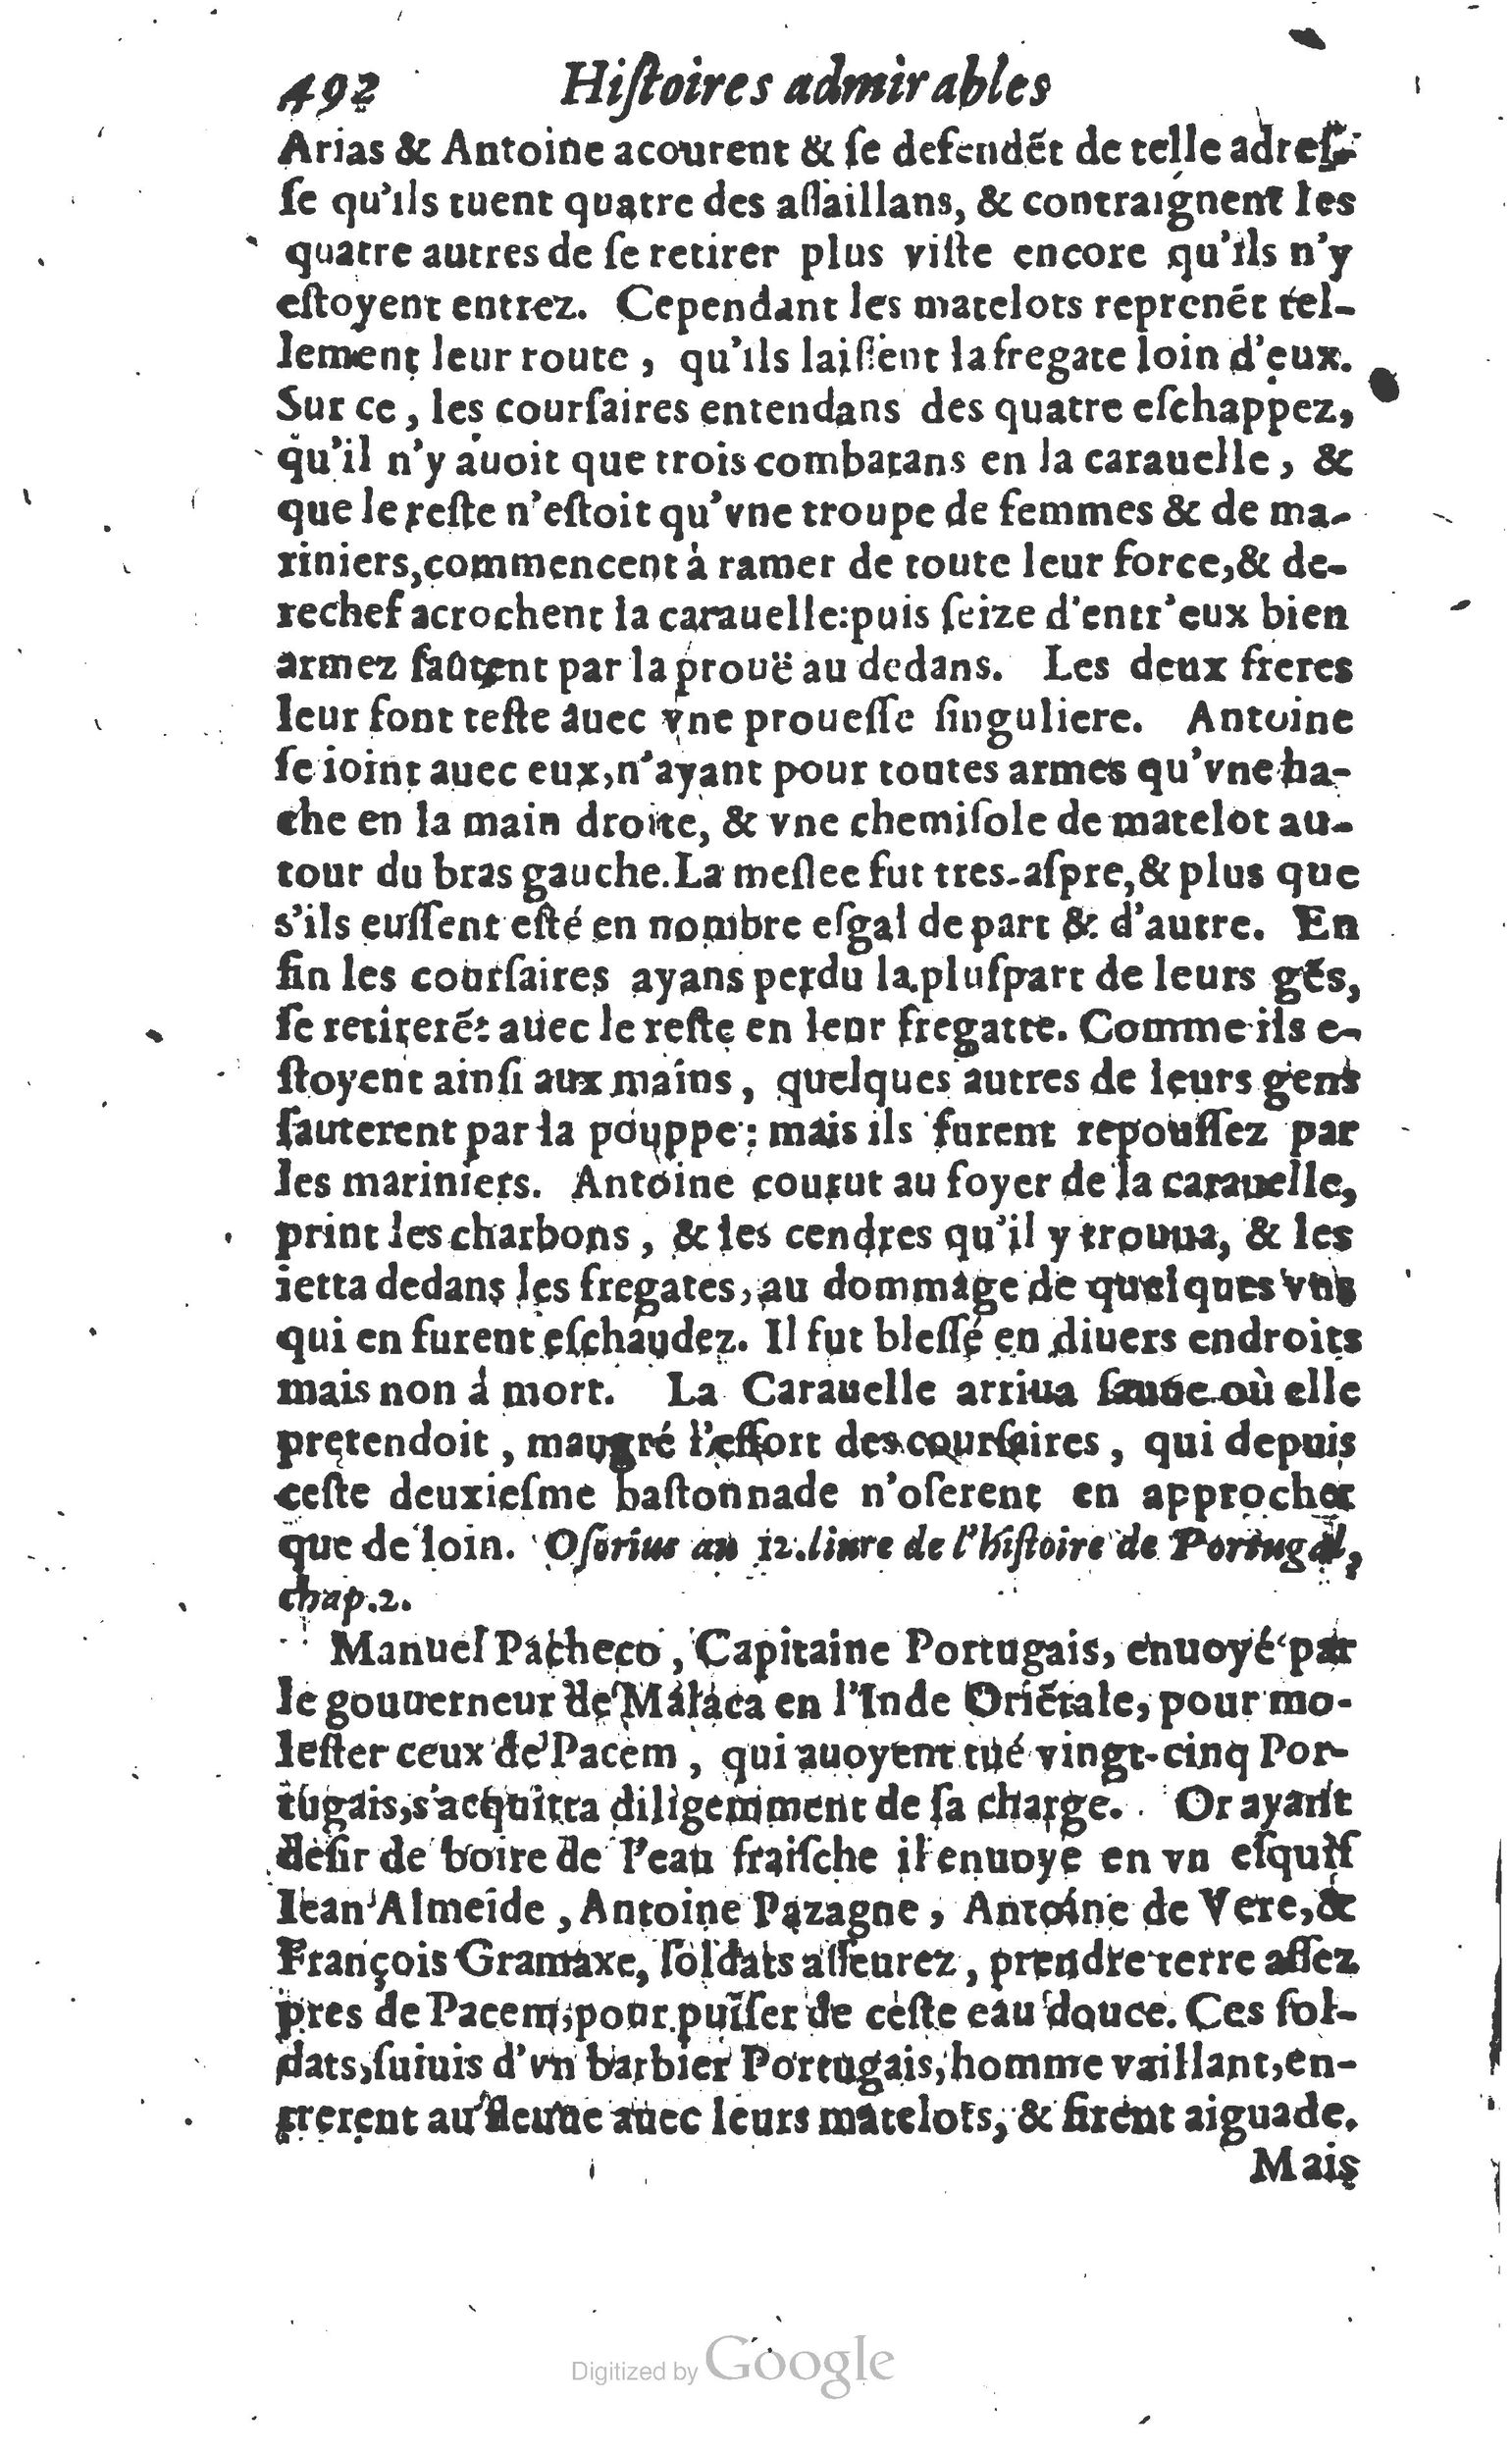 1610 Trésor d’histoires admirables et mémorables de nostre temps Marceau Princeton_Page_0513.jpg